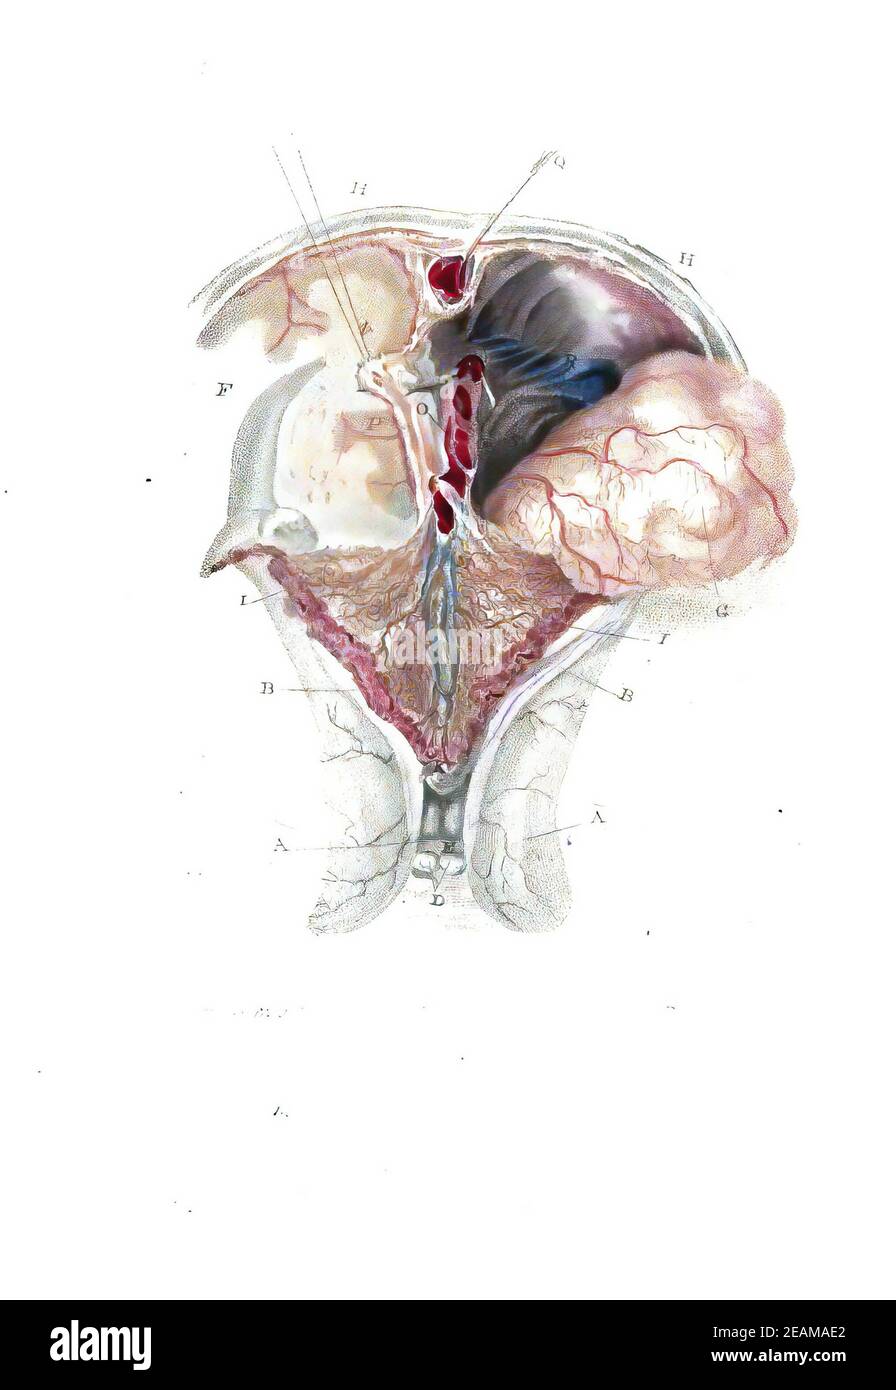 Illustration du cerveau humain dans un livre d'anatomie ancien Banque D'Images